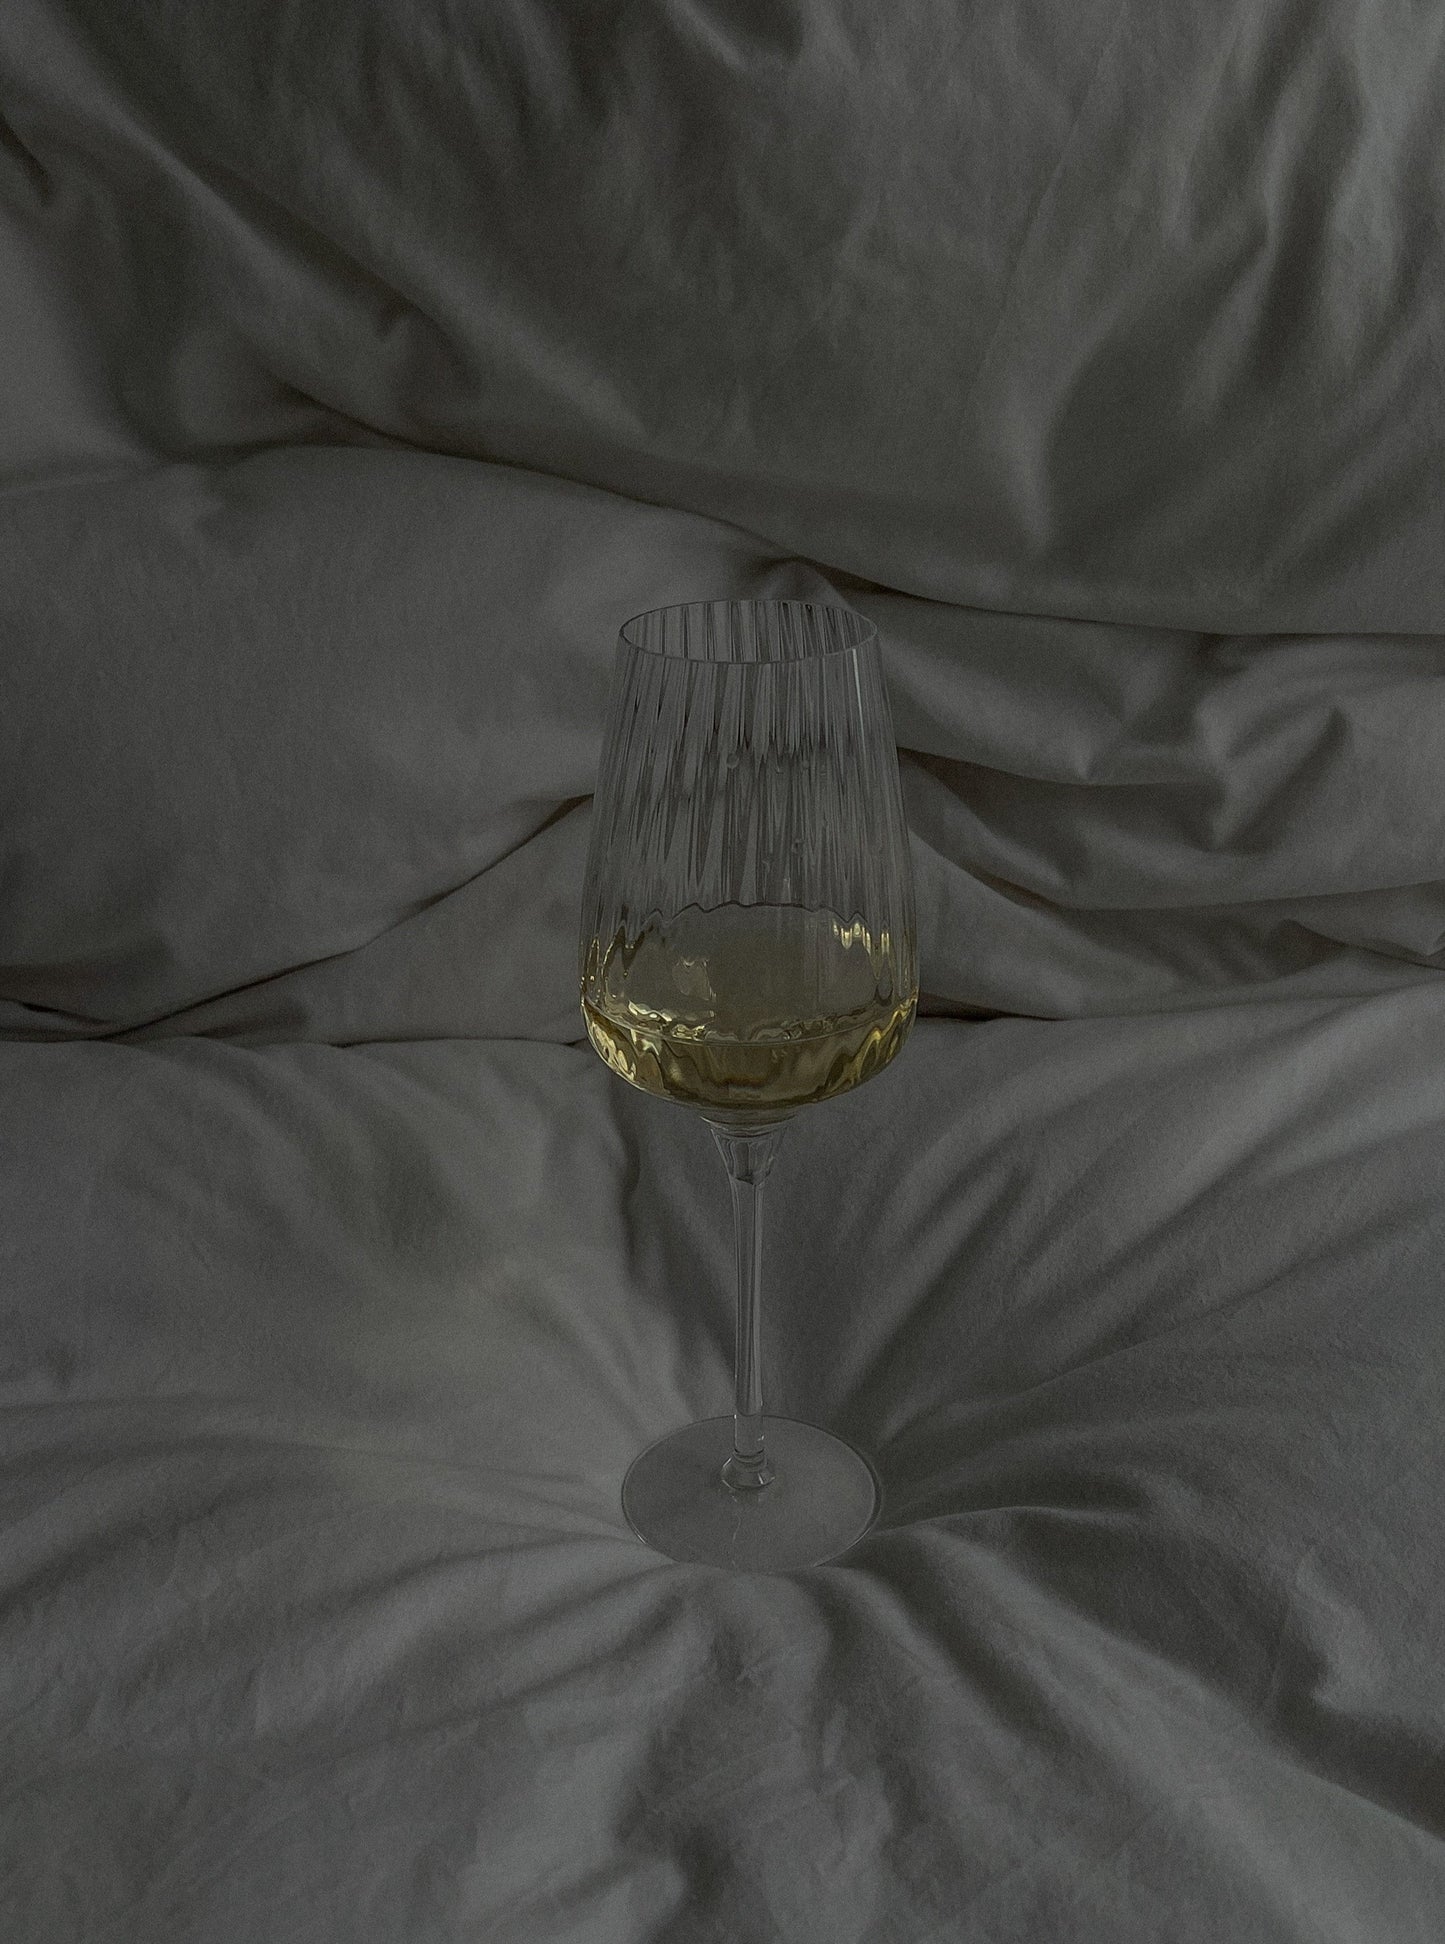 Weinglas Symetrie | 450ml